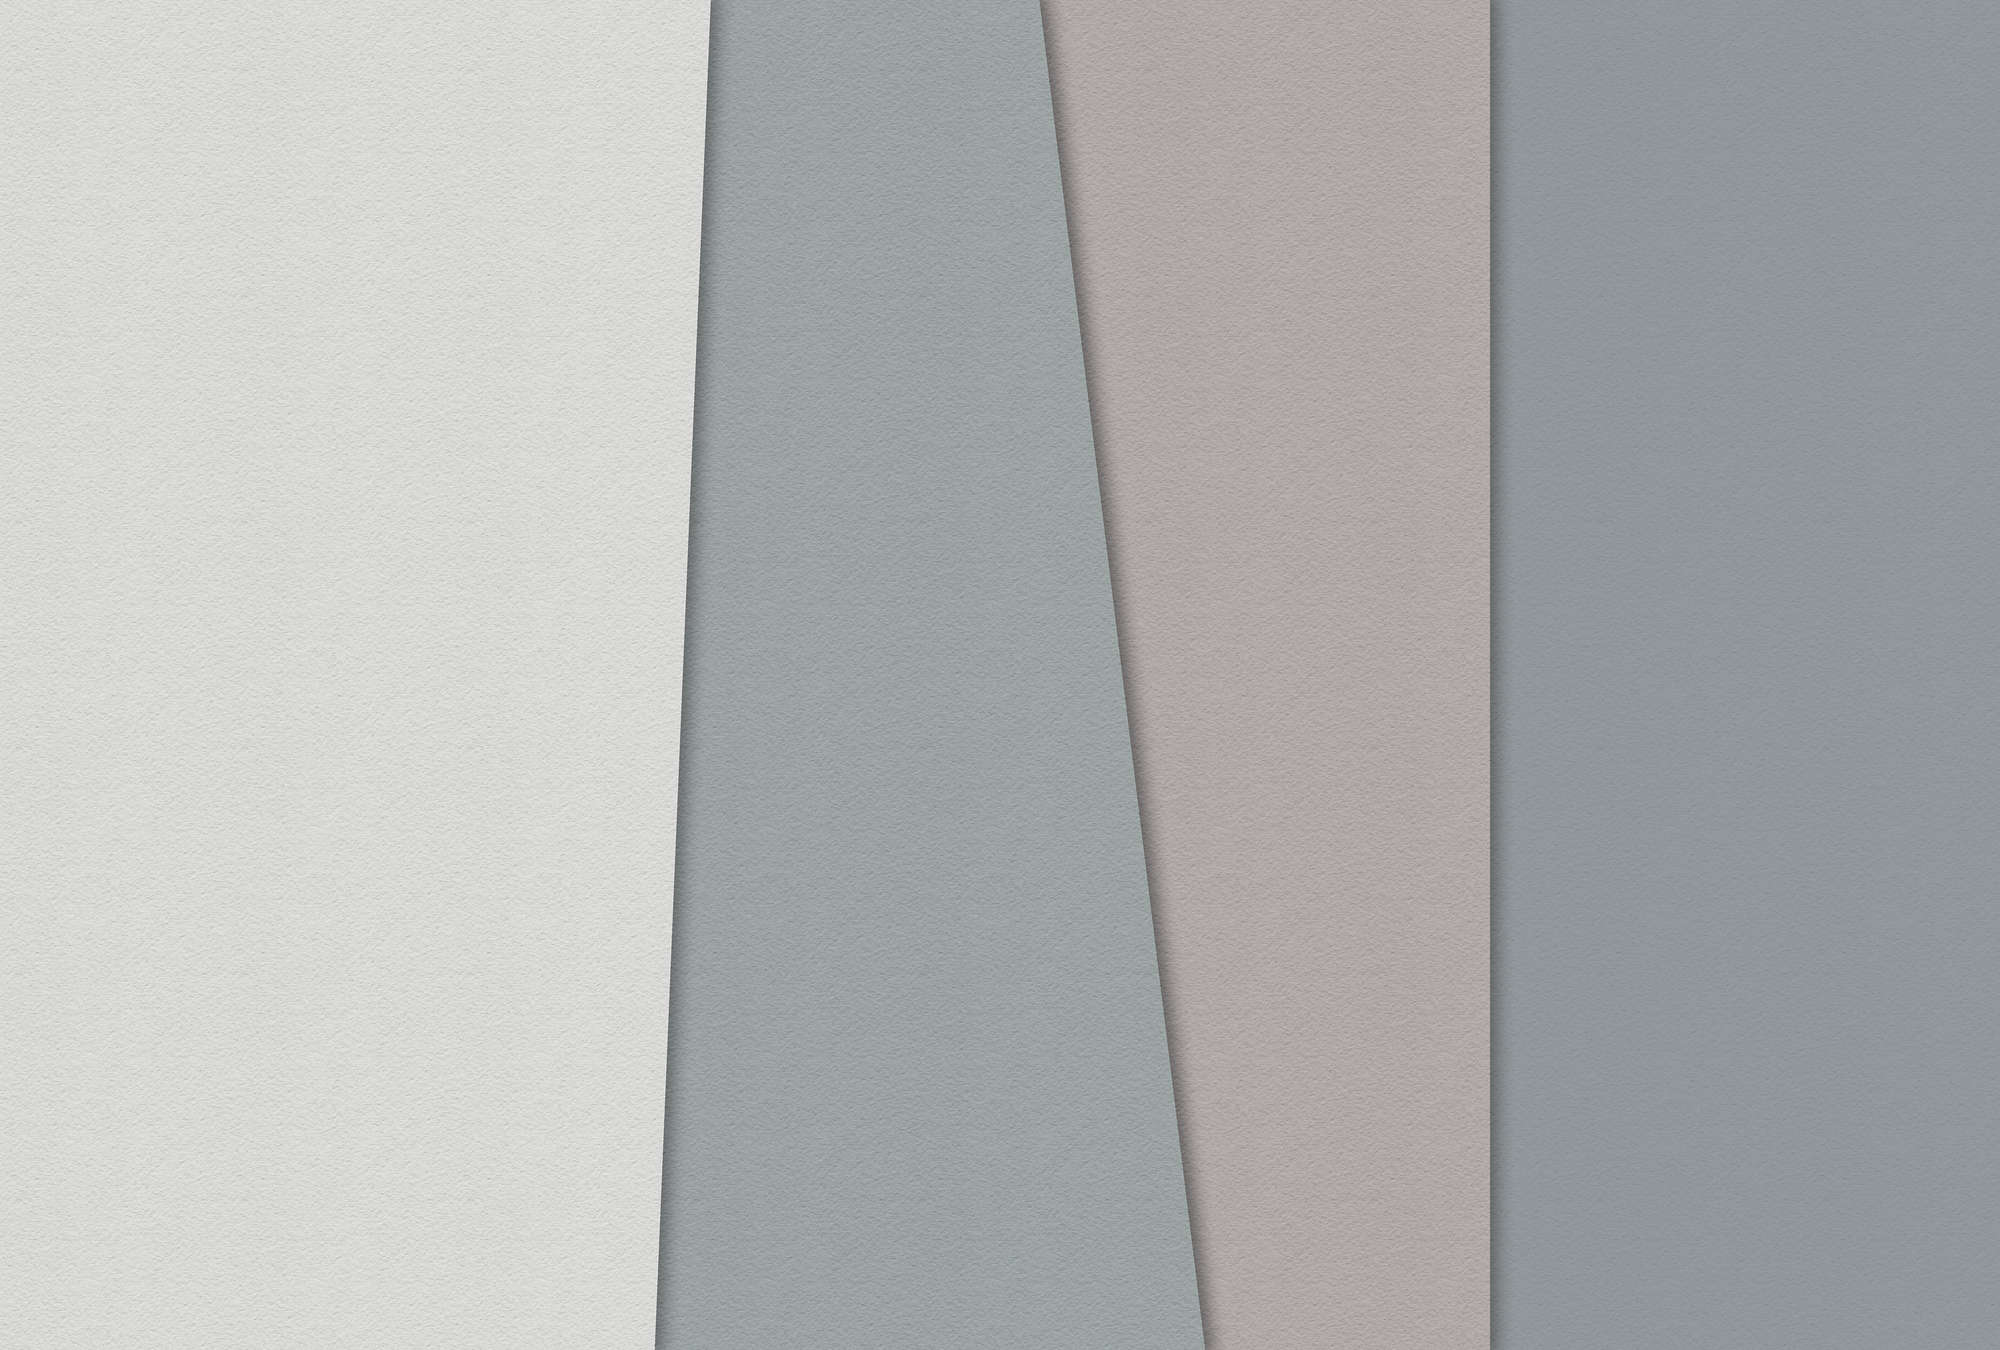             Layered paper 1 - Papier peint graphique avec aplats de couleurs dans une structure de papier à la cuve - bleu, crème | structure Intissé
        